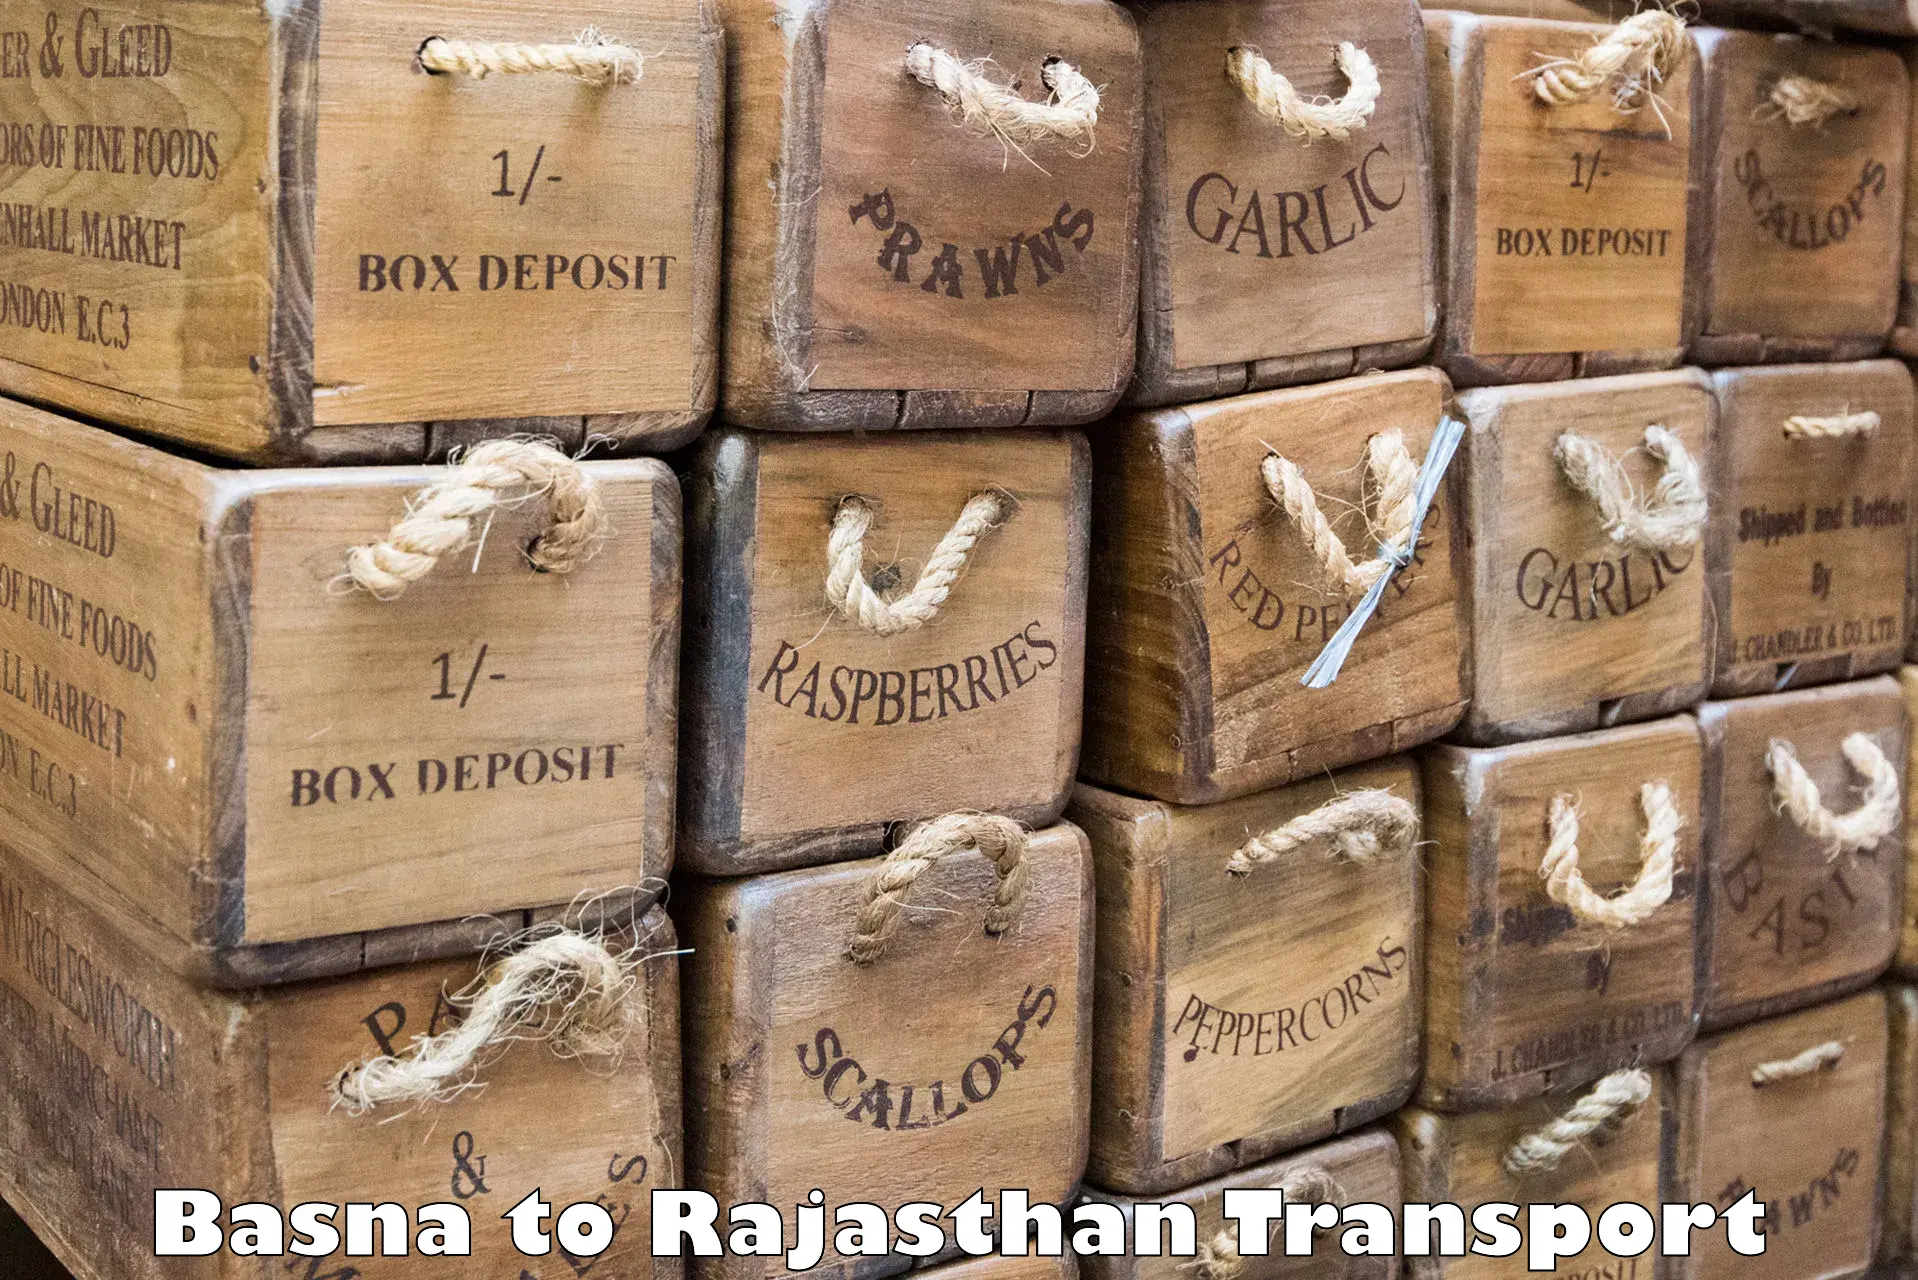 Nearest transport service Basna to Kumbhalgarh